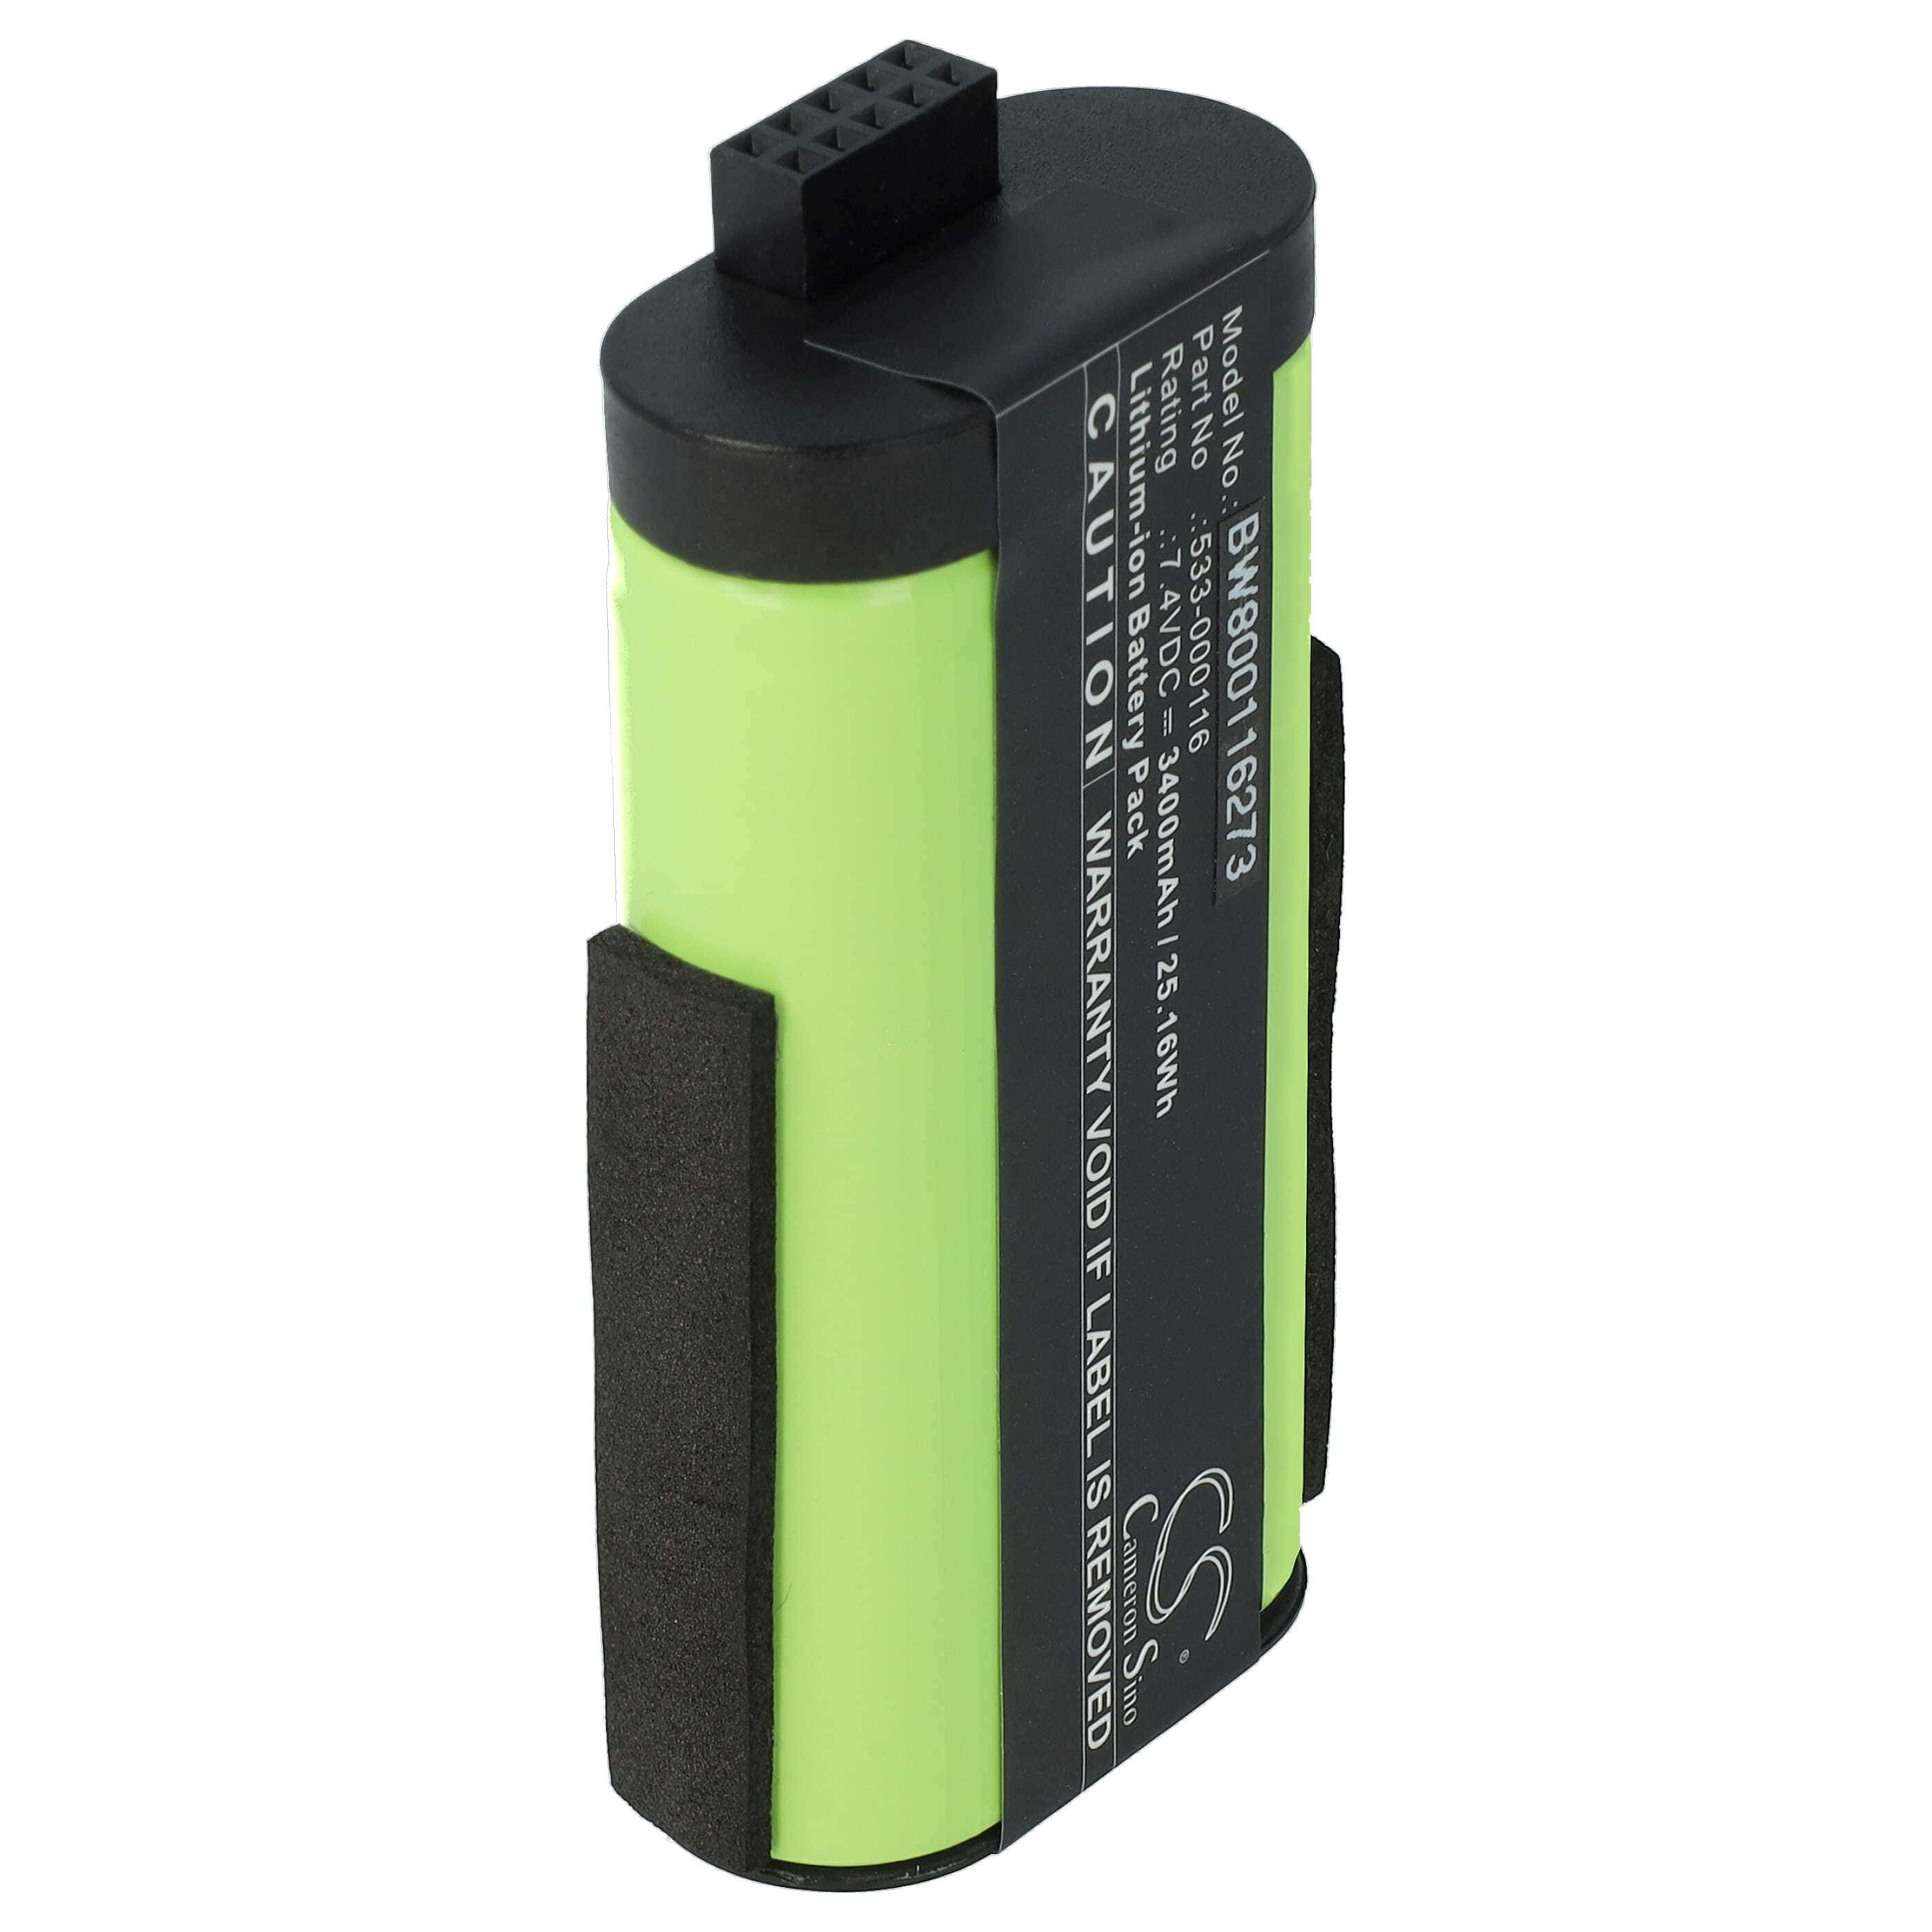 Batteria sostituisce Logitech 533-000116, 533-000138 per altoparlanti Logitech - 3400mAh 7,4V Li-Ion